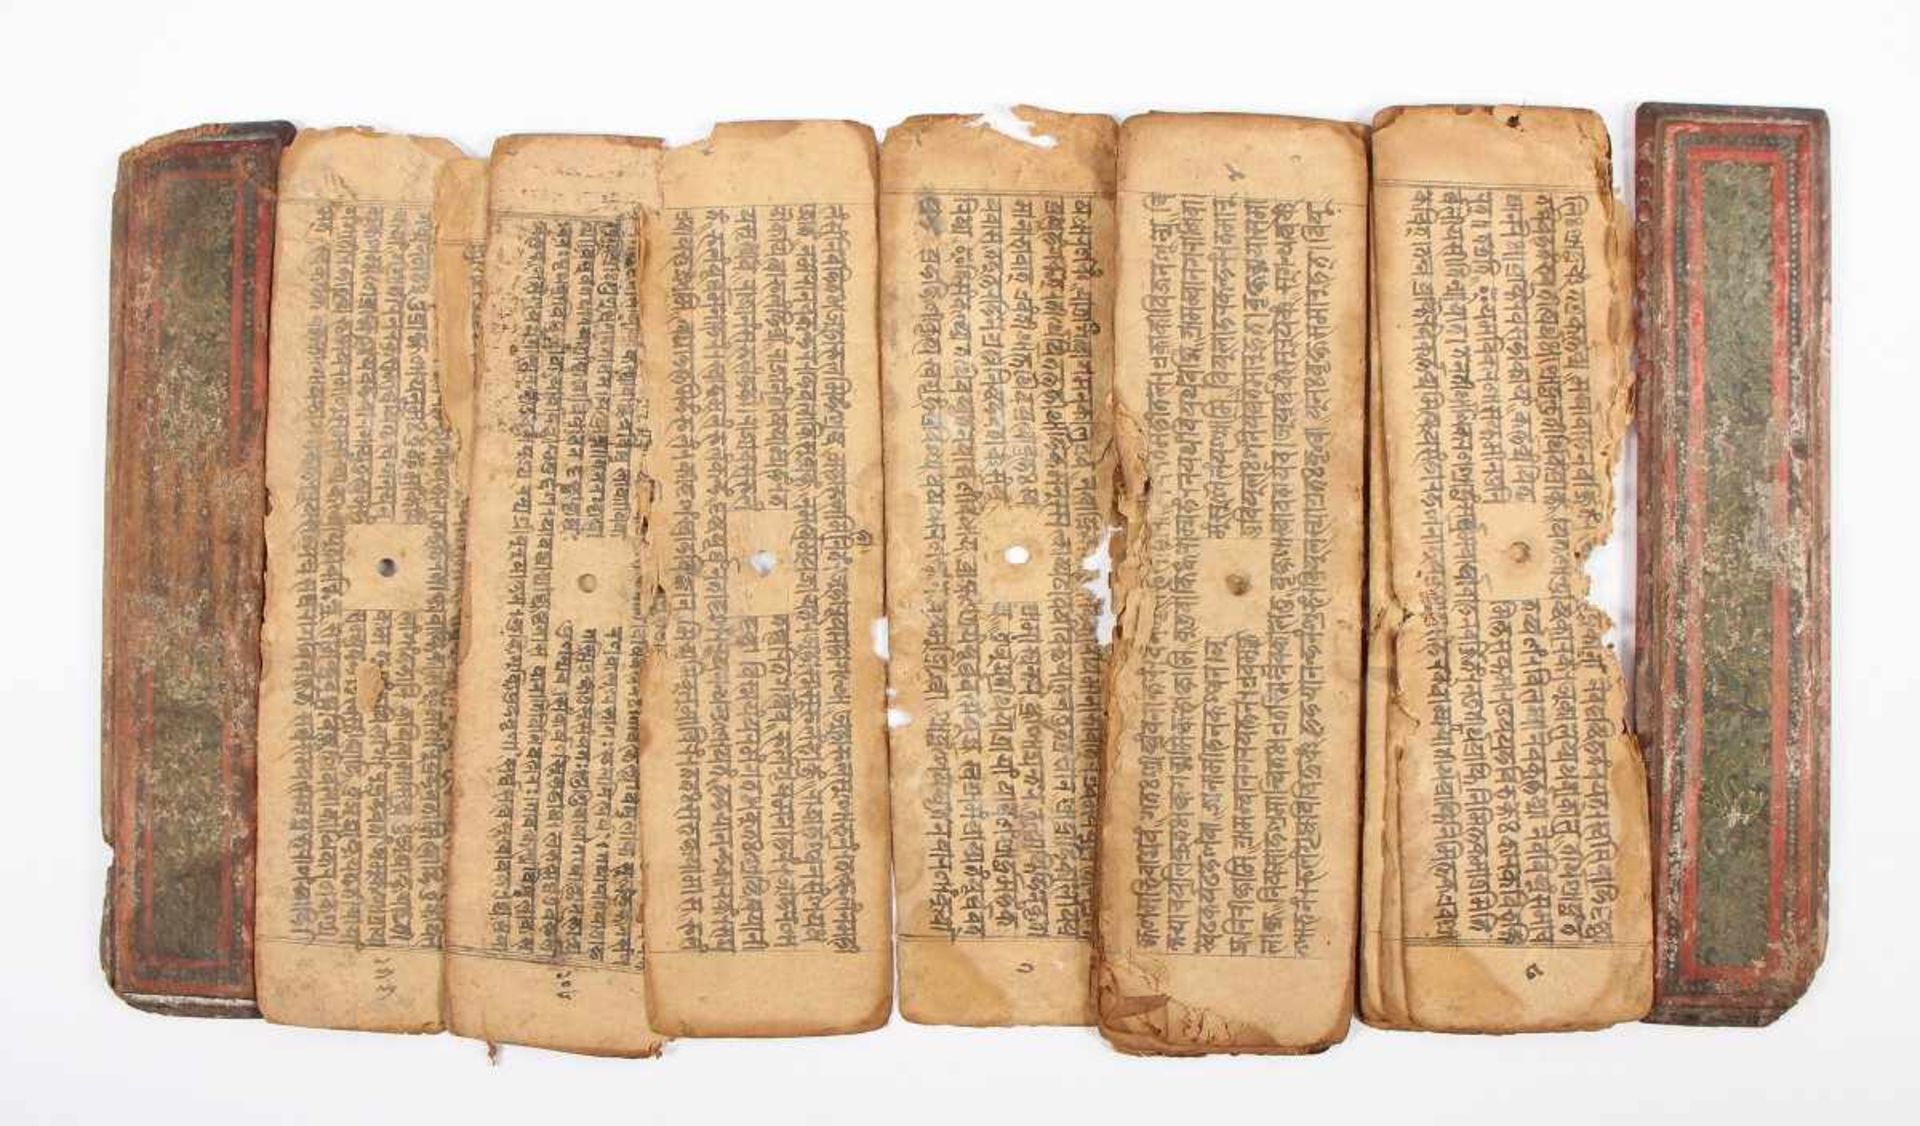 MANUSKRIPT, Tusche auf Papier, farbig gefasste Holzdeckel, L 24,5, NEPAL - Bild 2 aus 2